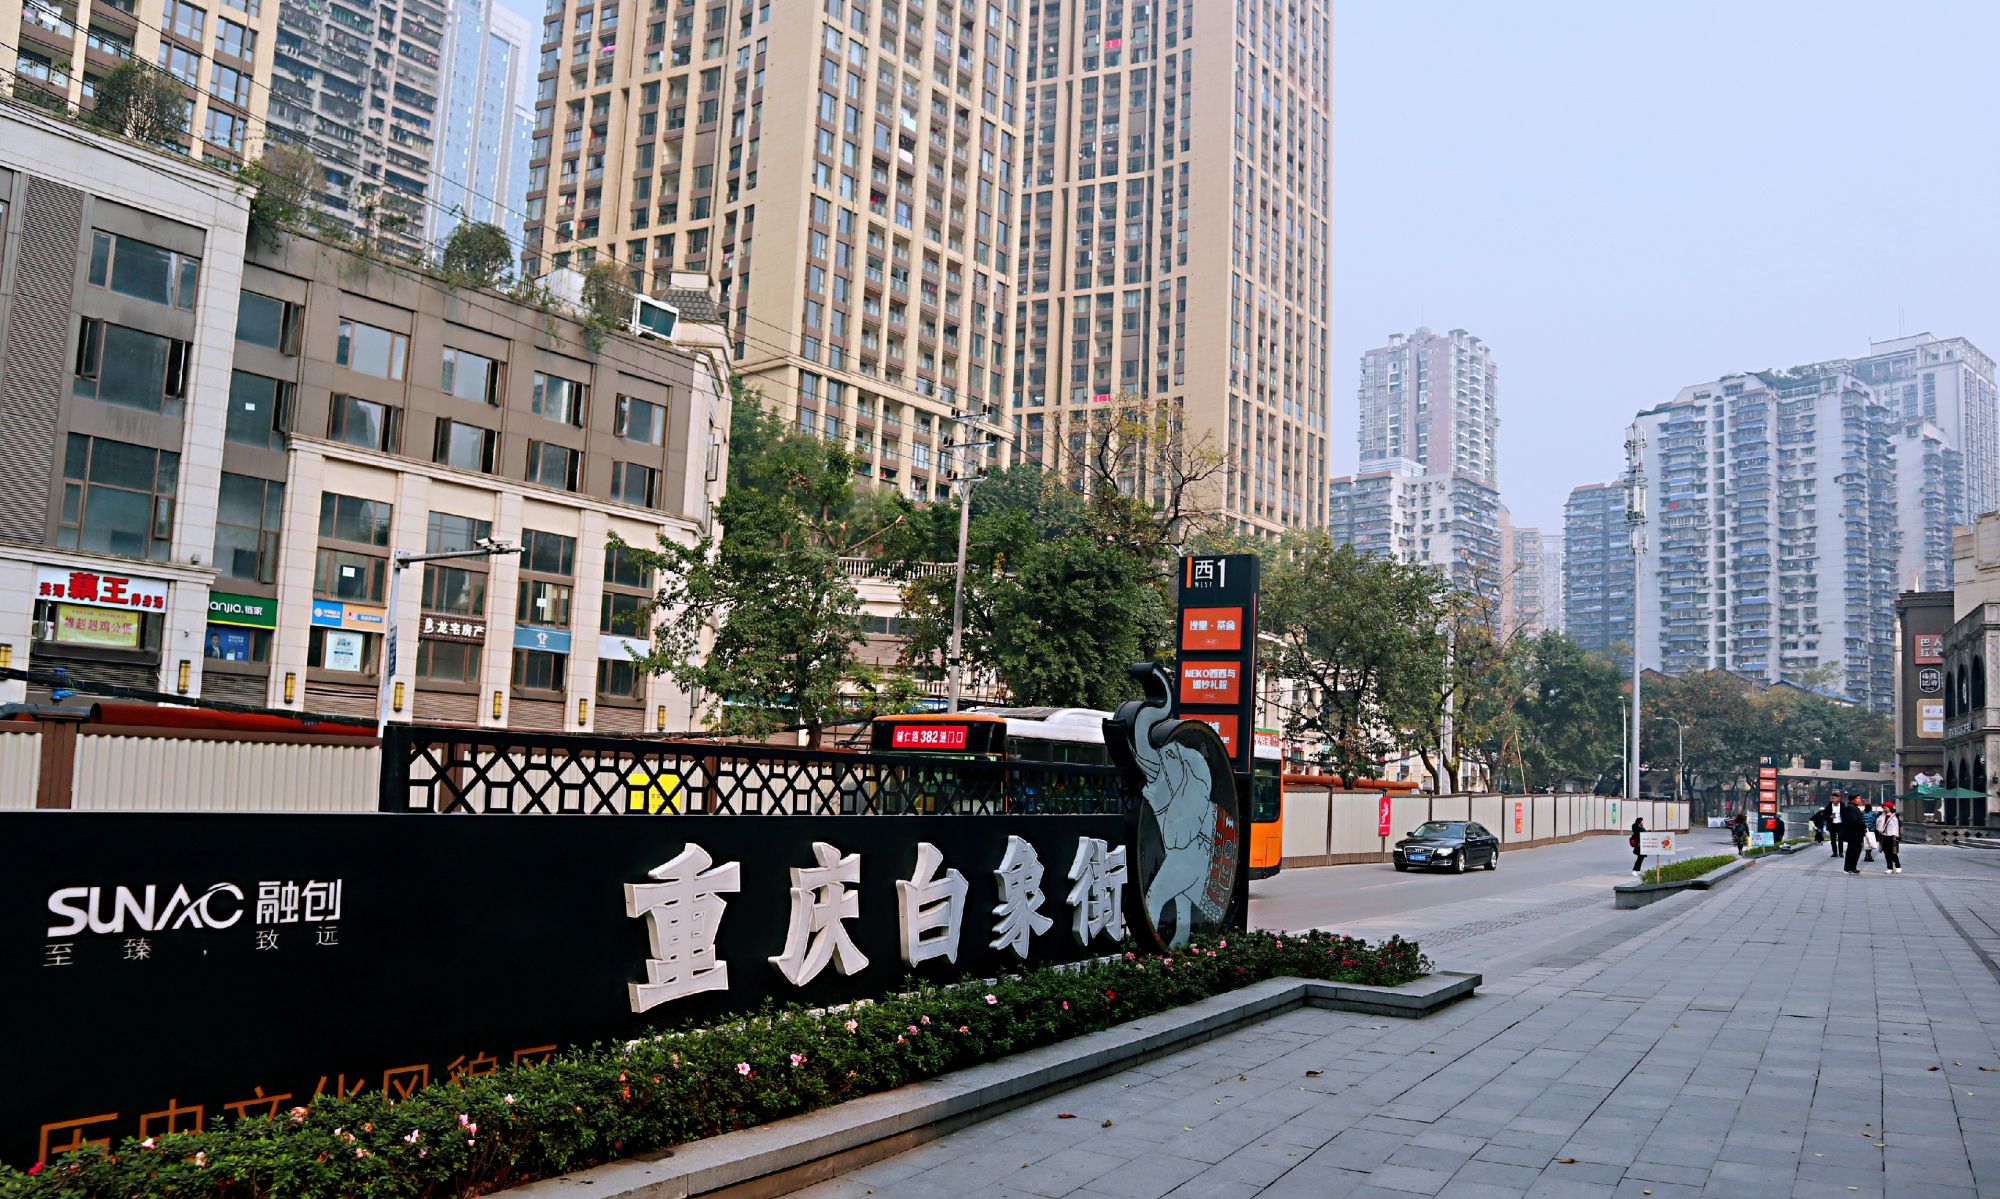 重庆有条历史文化名街,叫白象街